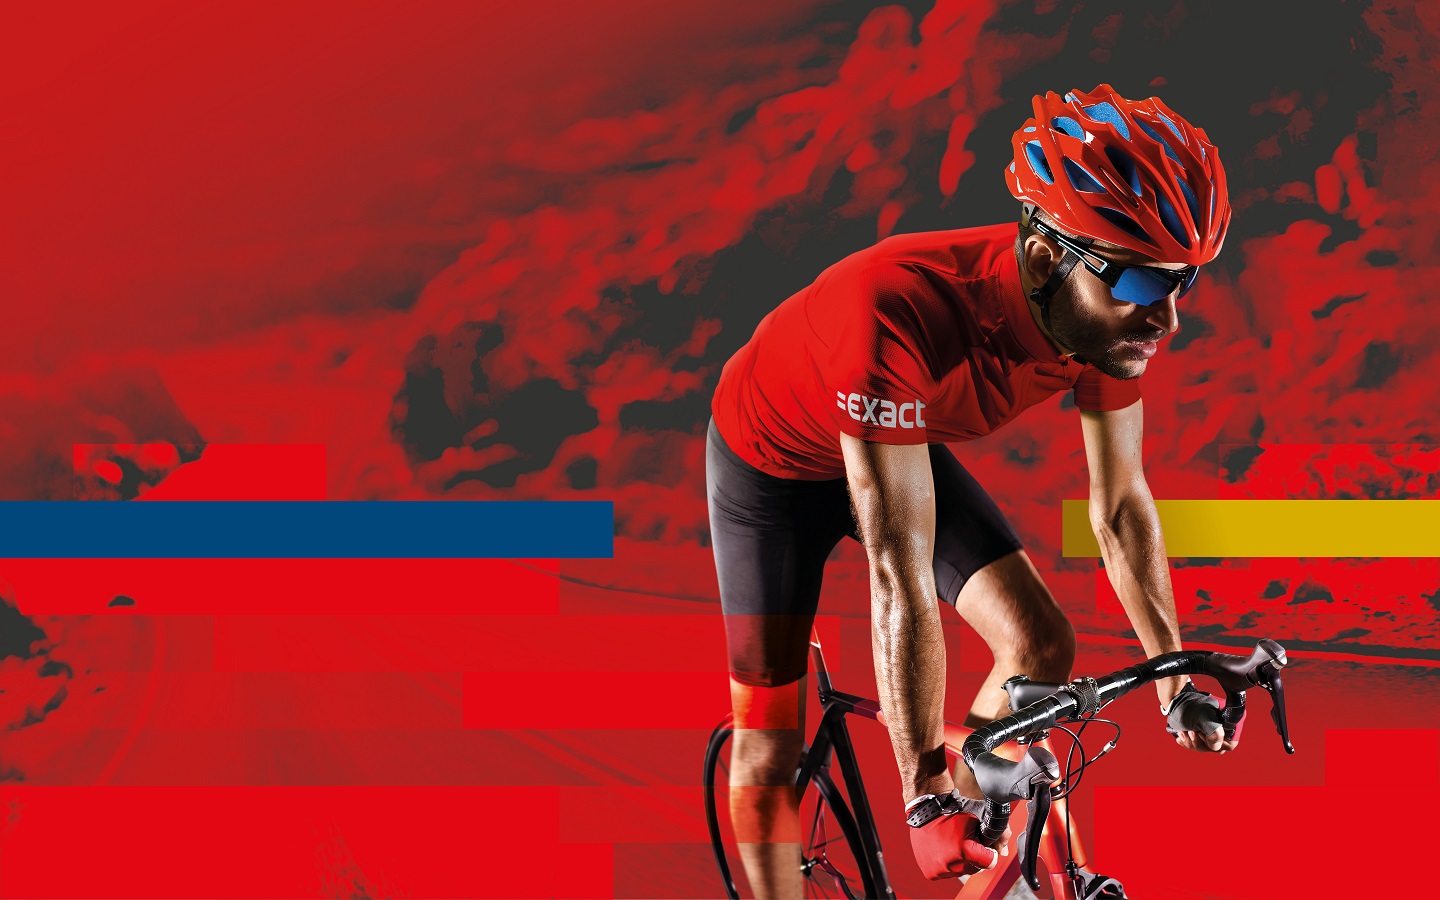 El campeonato de Europa de ciclismo 2023 está patrocinado por Exact